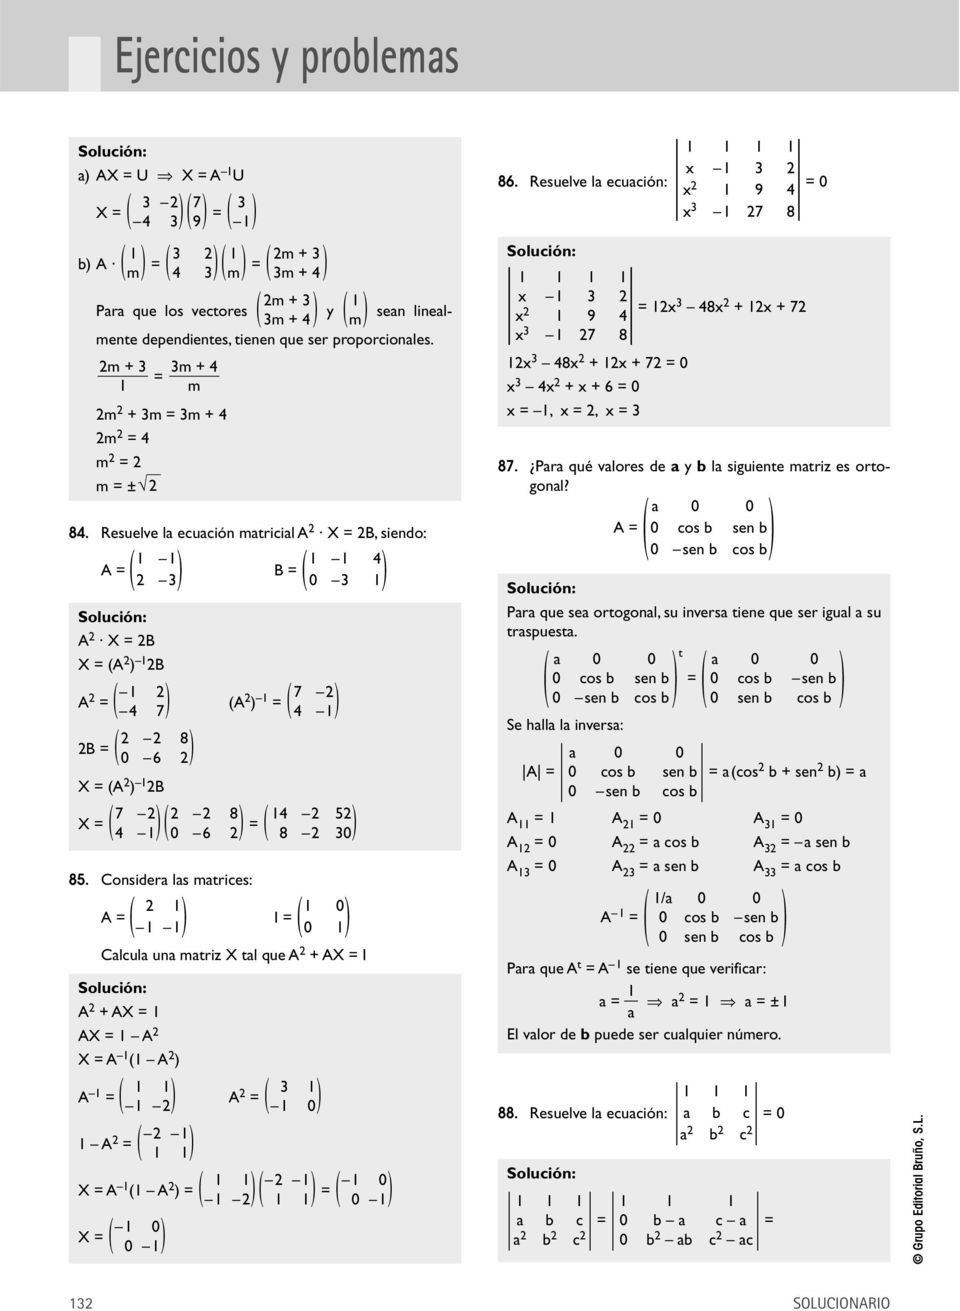 Considera las matrices: 0 A = I = 0 Calcula una matriz X tal que A + AX = I A + AX = AX = A X = A A A = A 3 = A 0 = X = A A = = 0 X = 0 0 0 x 3 86.